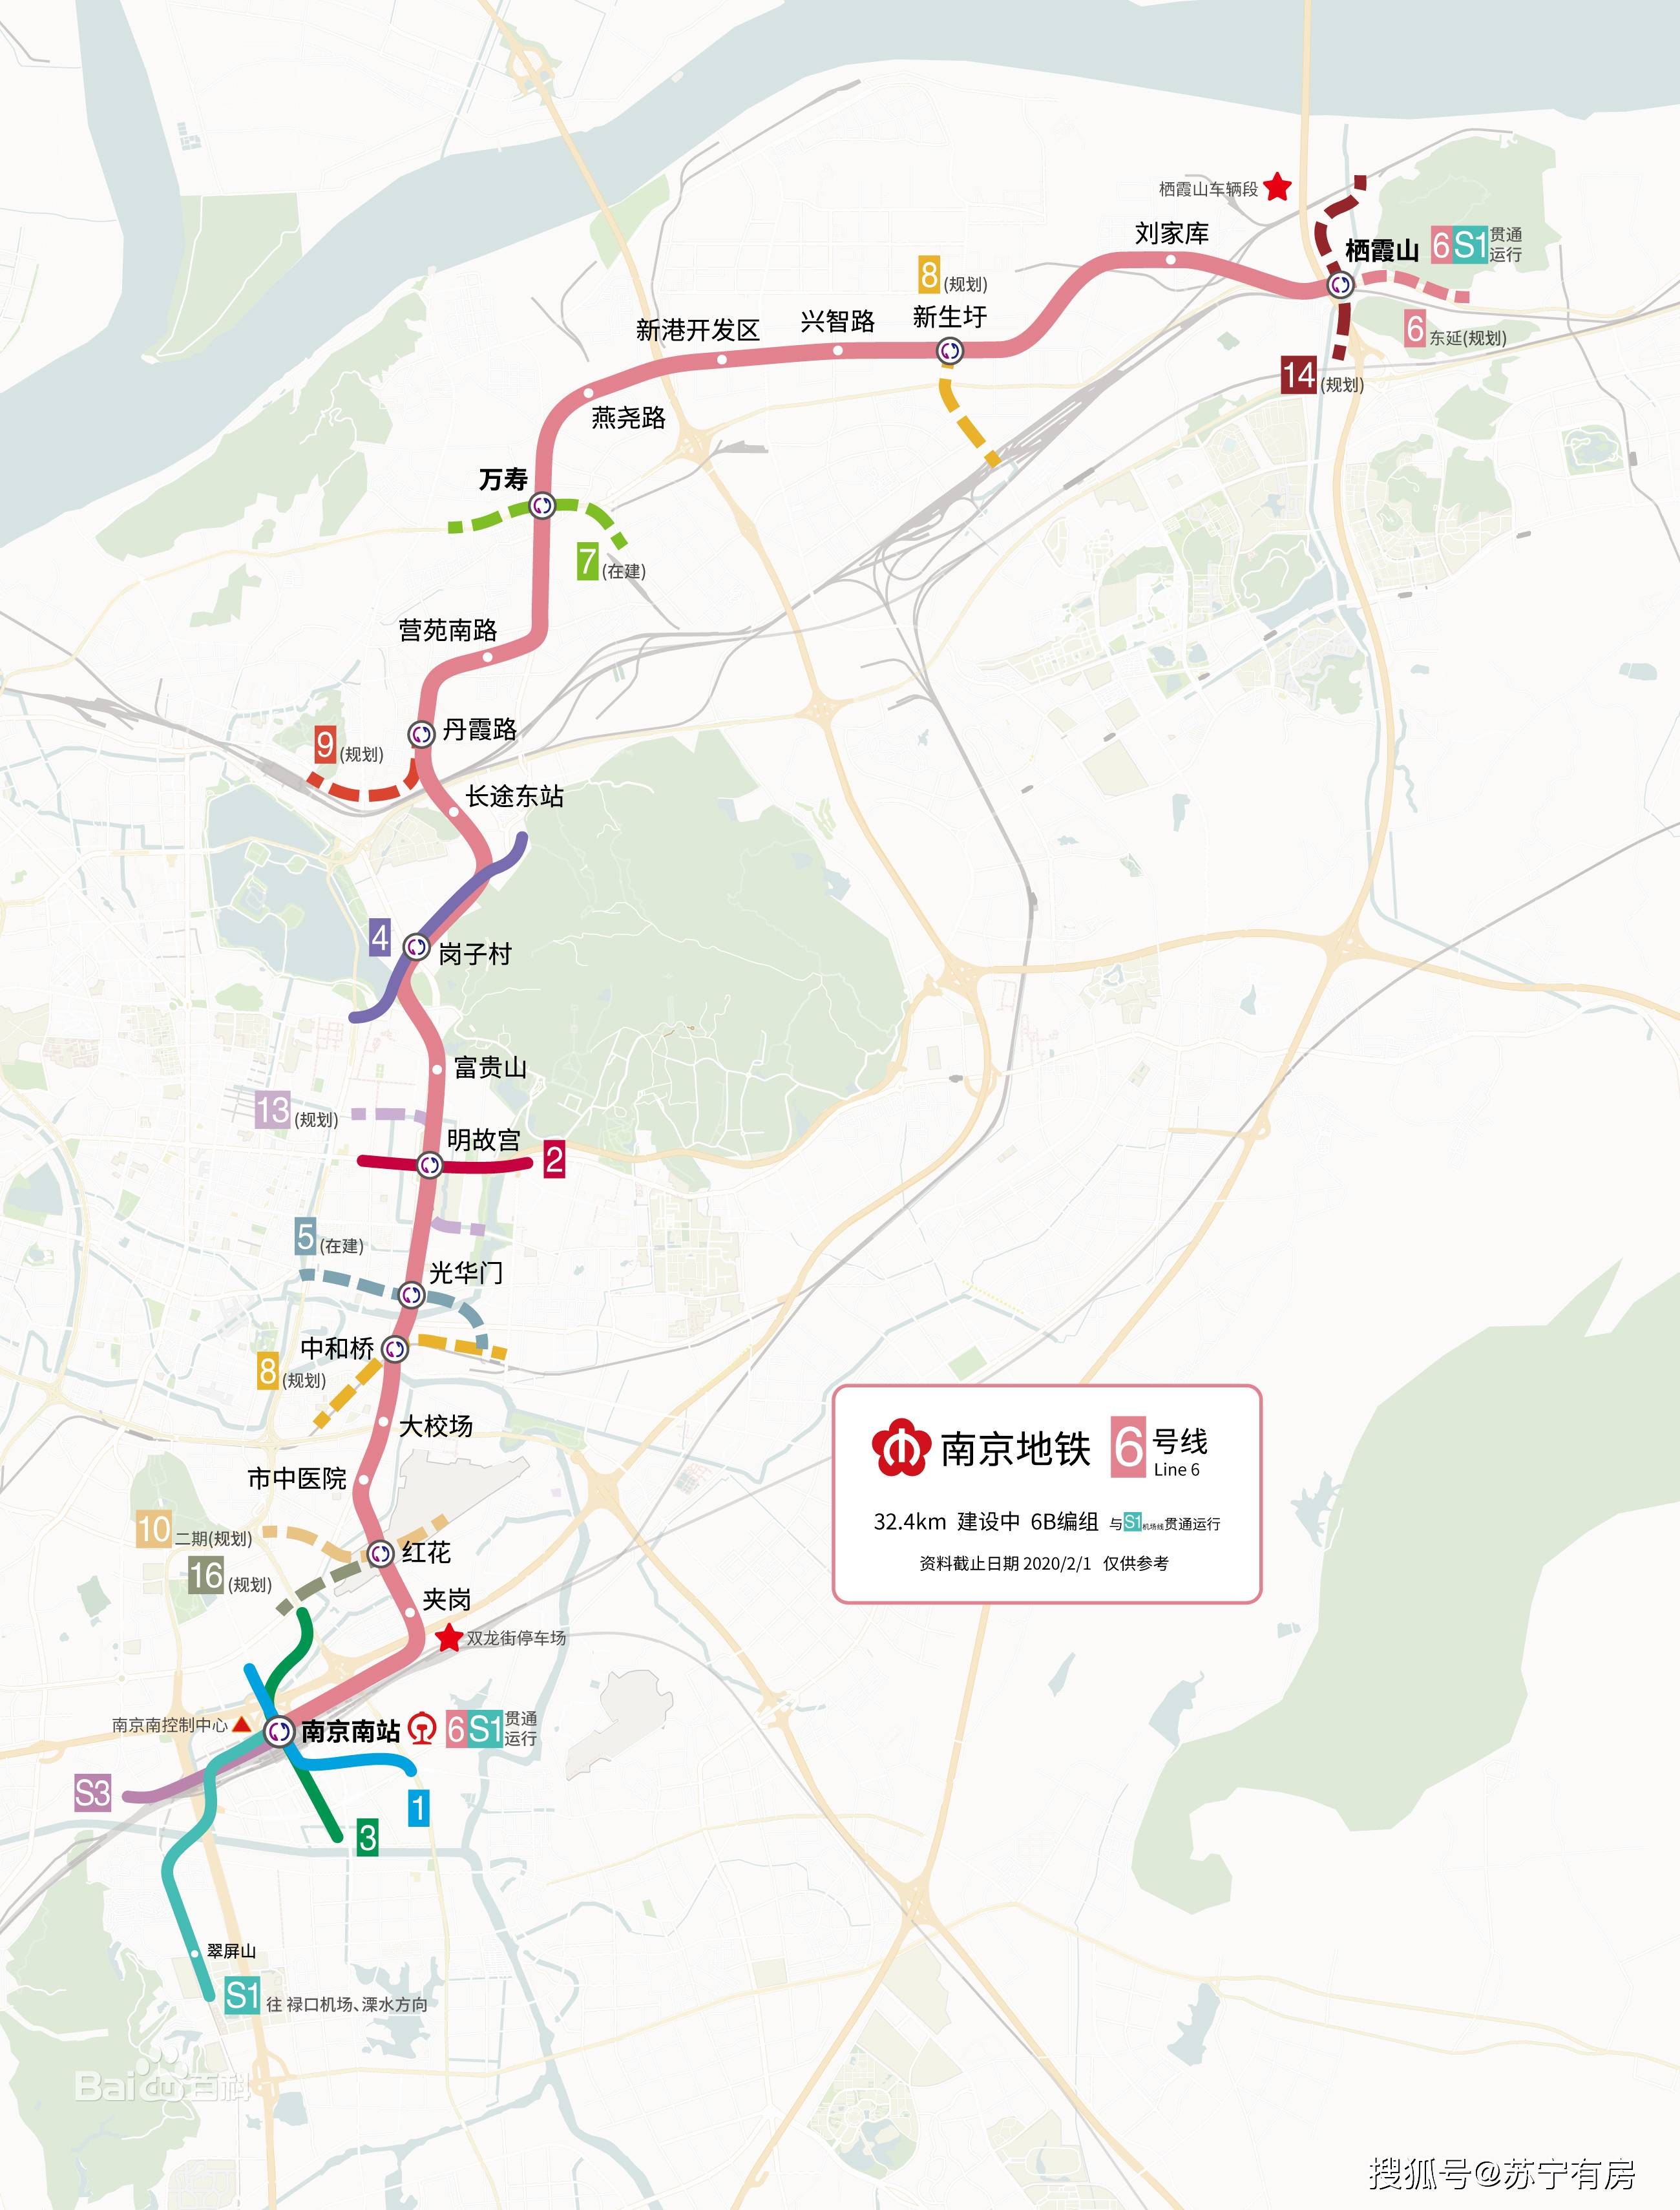 计划于2023年通车,标志色为粉色. 建成后与南京地铁s1号线